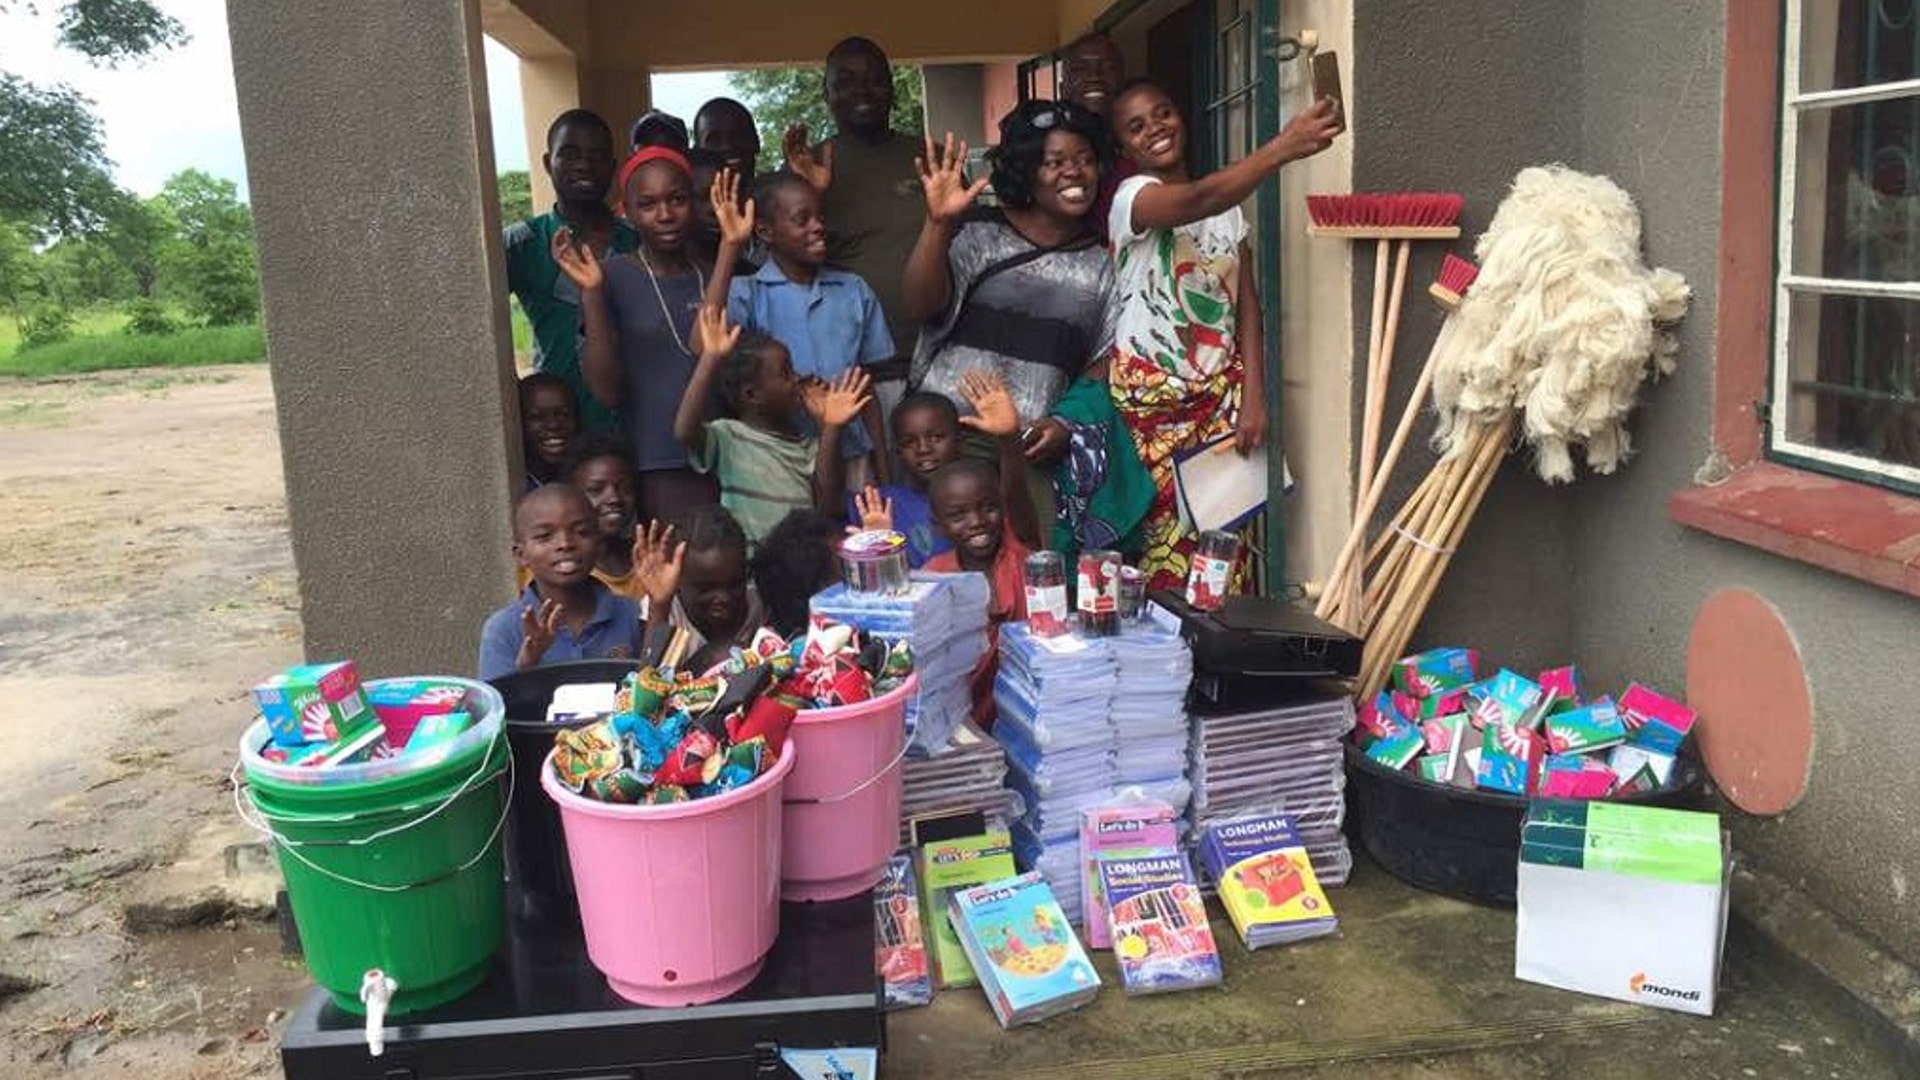 apoBank-Stiftung unterstuetzt Schule in Sambia mit Material